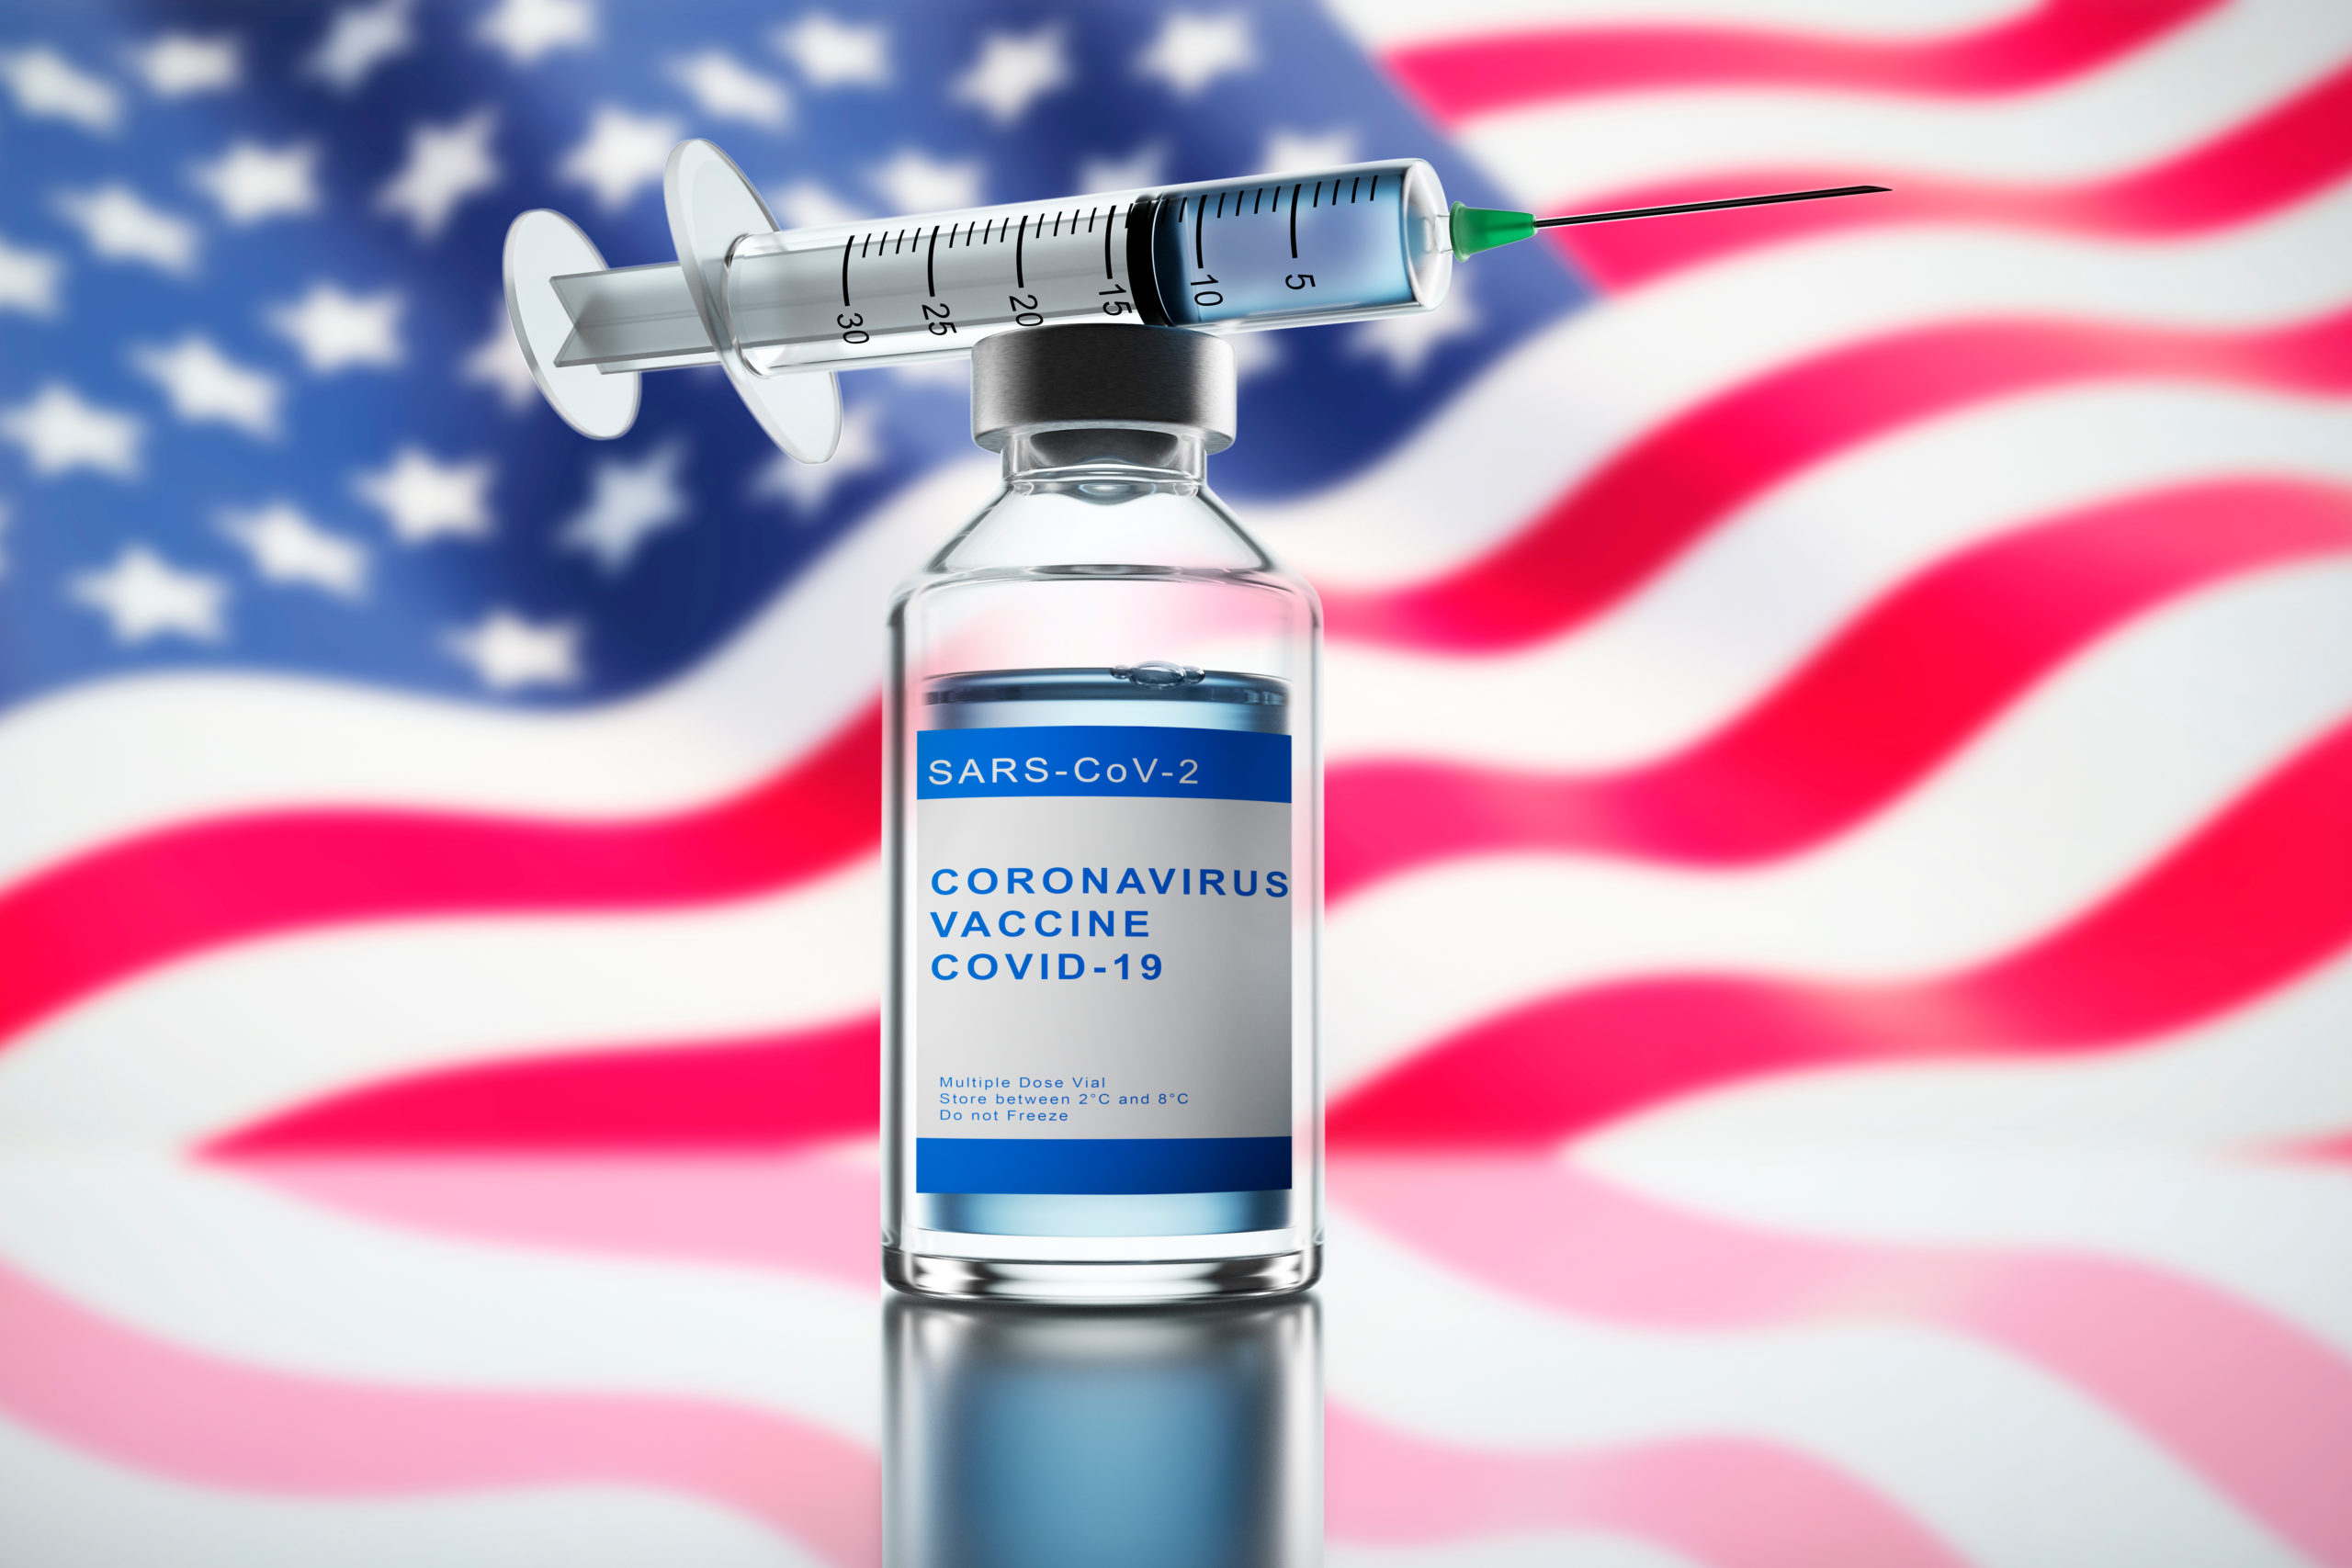 ΗΠΑ: Περισσότερες από 100 εκατομμύρια δόσεις εμβολίων